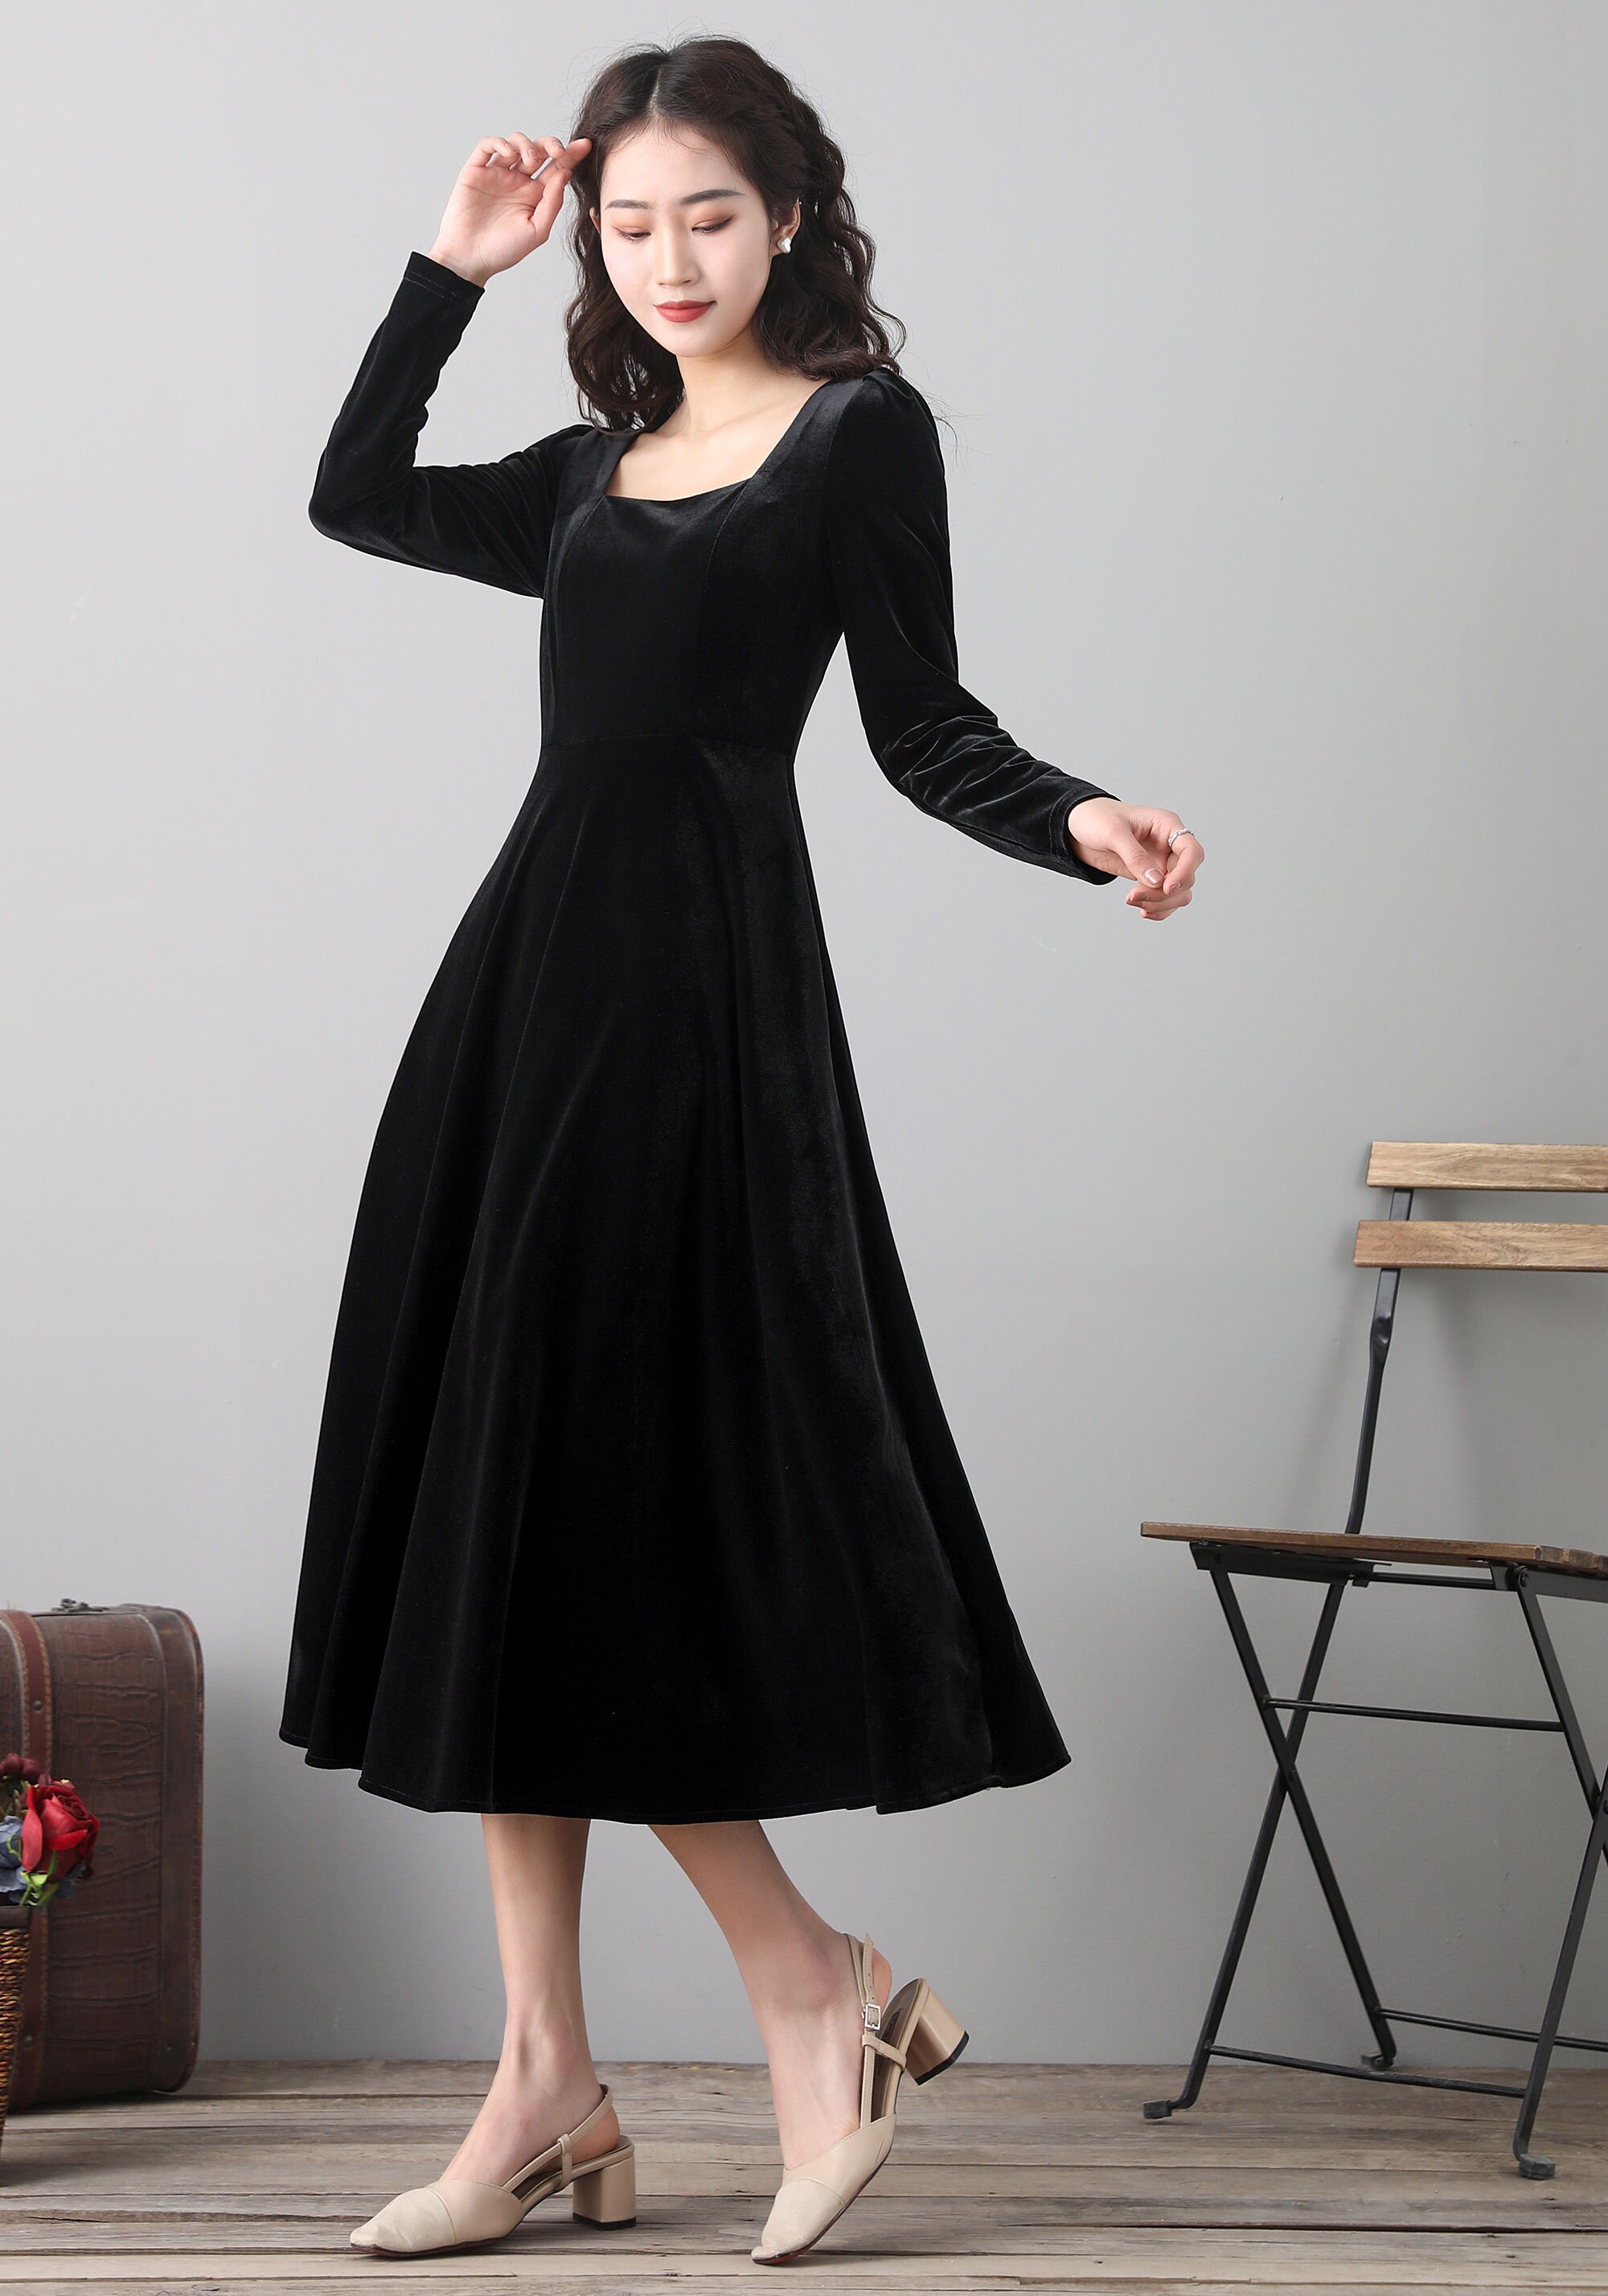 Velvet Dress Little Black Dress Long Sleeve Dress Midi | Etsy